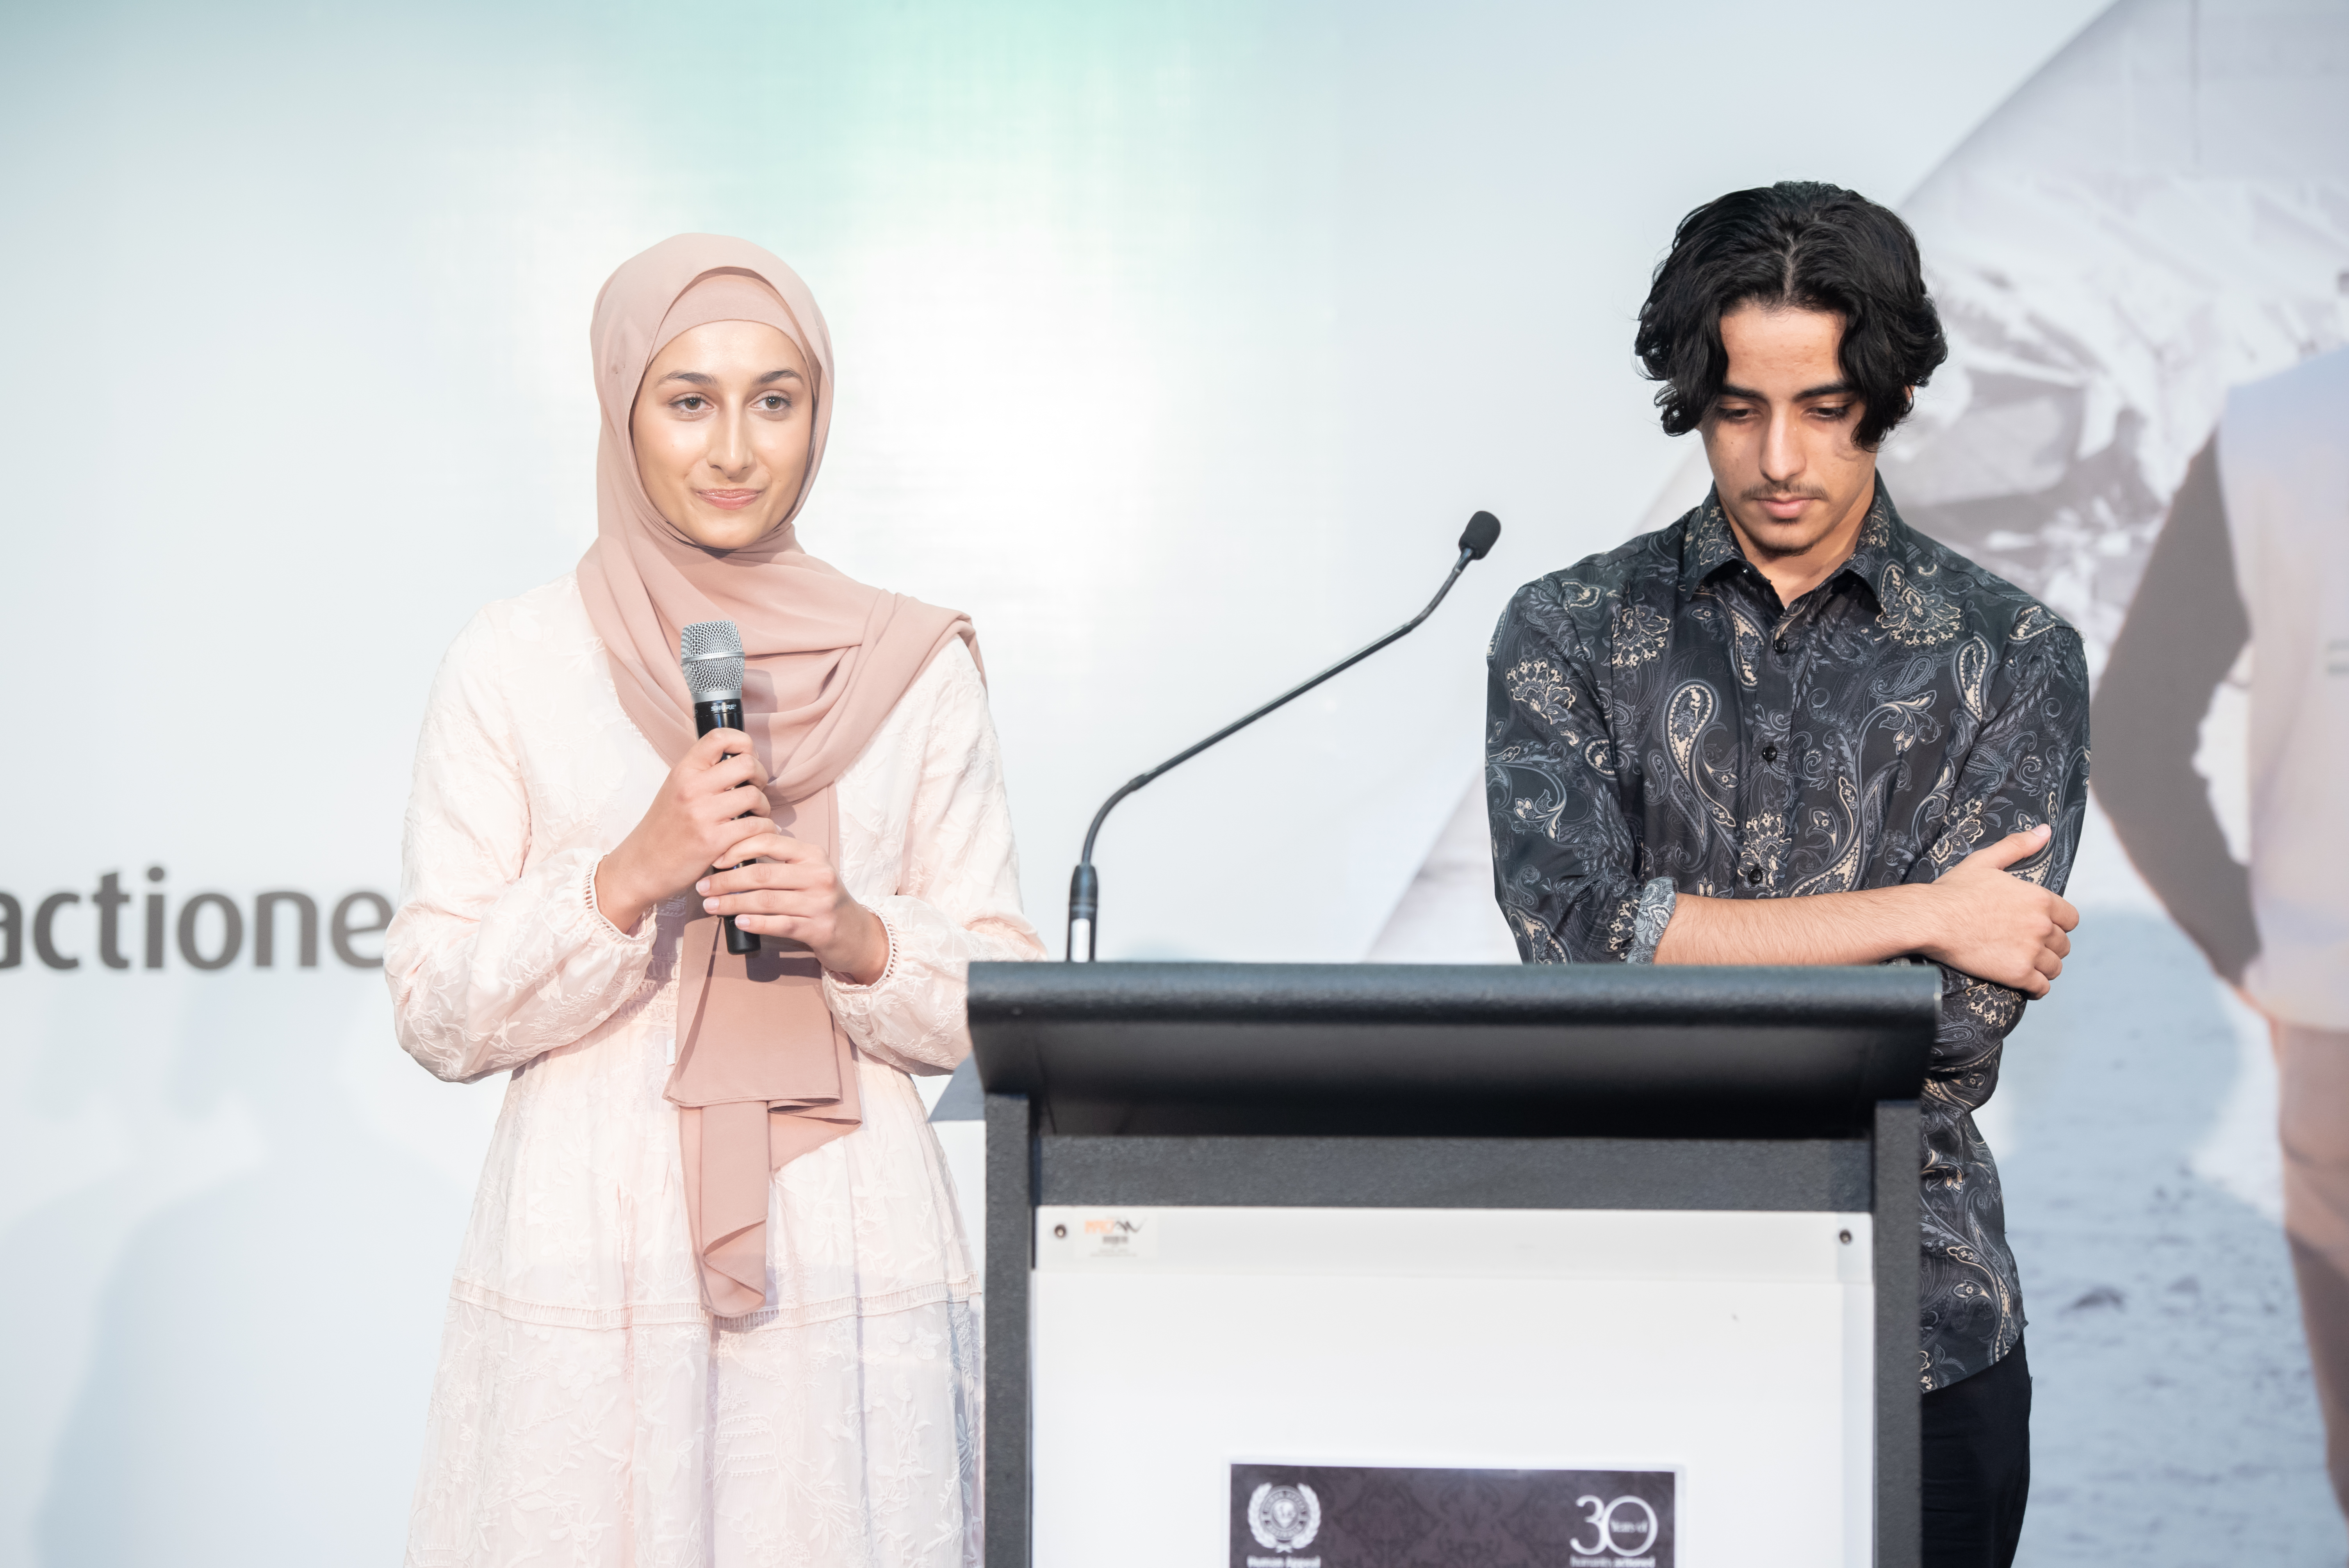 Sara Karem (99.95ATAR) & Jad Motassam (99.90ATAR) At HAA's Year 12 Muslim Achievement Awards Ceremony Sydney 2022